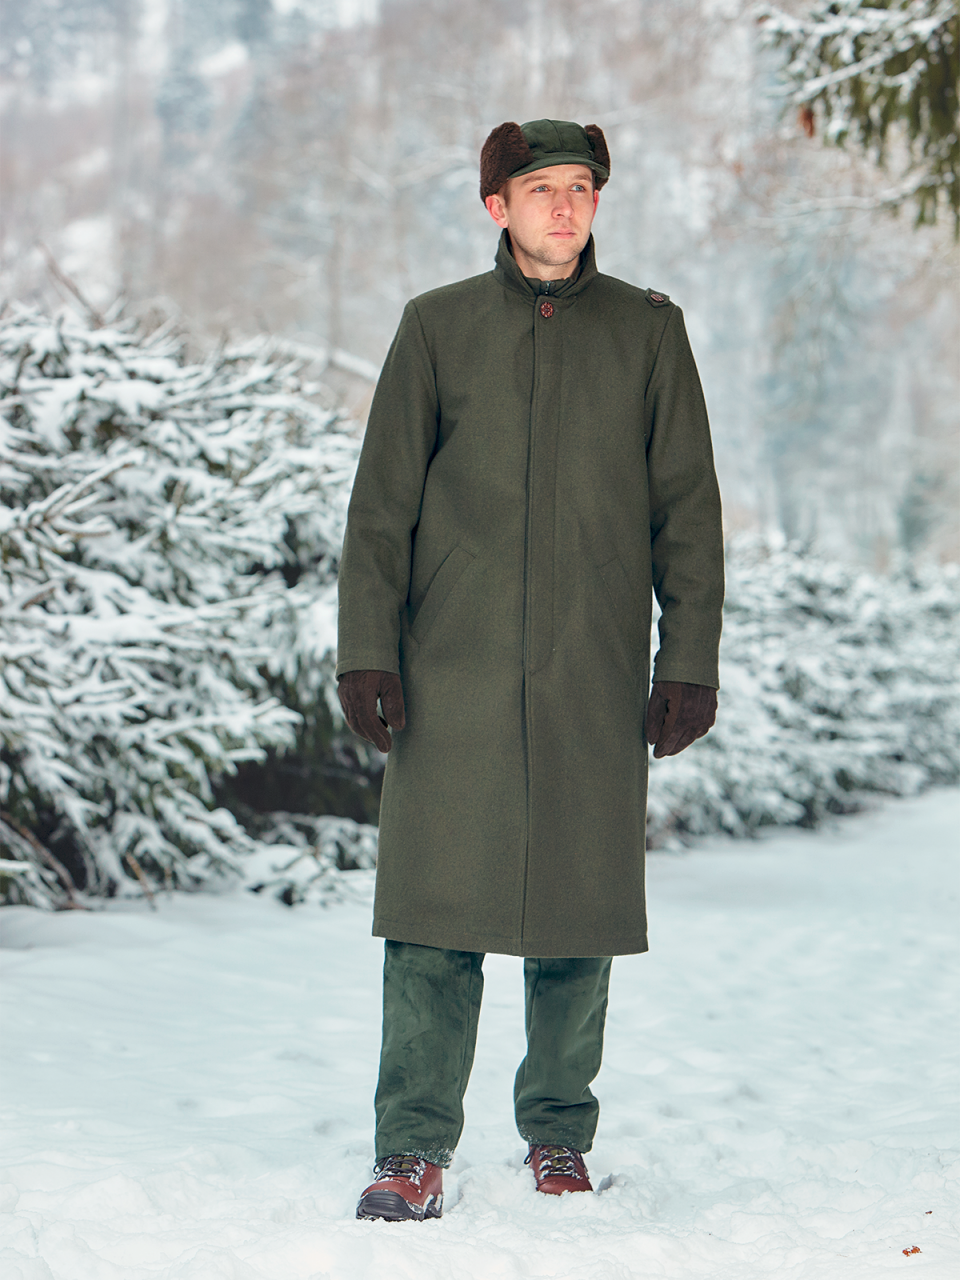 poľovnícky zateplený kabát HARALD outdoorové oblečenie ext